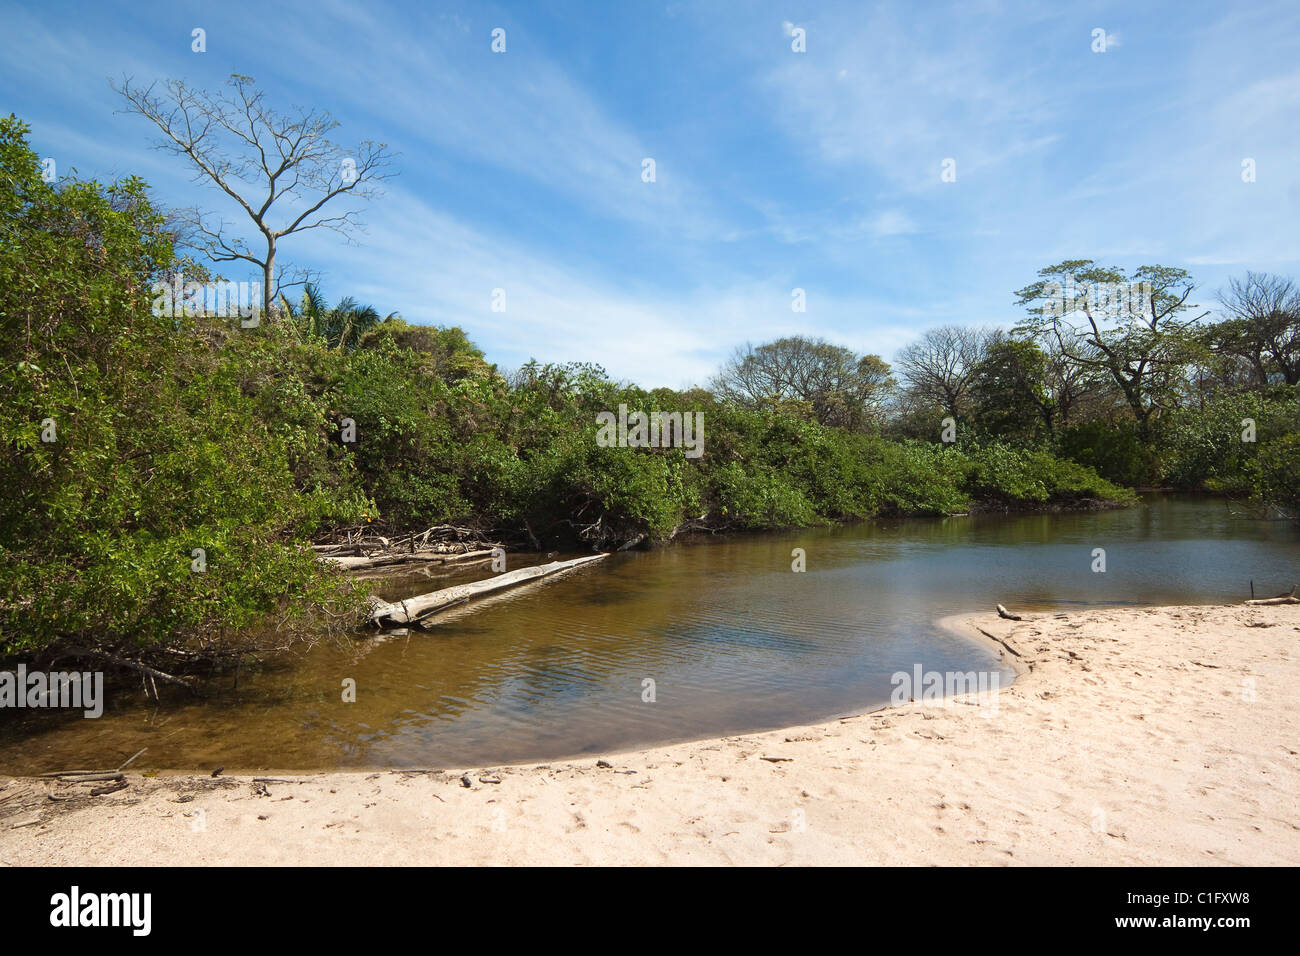 La bouche de la rivière durant la saison sèche à Playa Pelada, la plus tranquille des plages de surf populaire ; ce village de Nosara, Costa Rica Banque D'Images